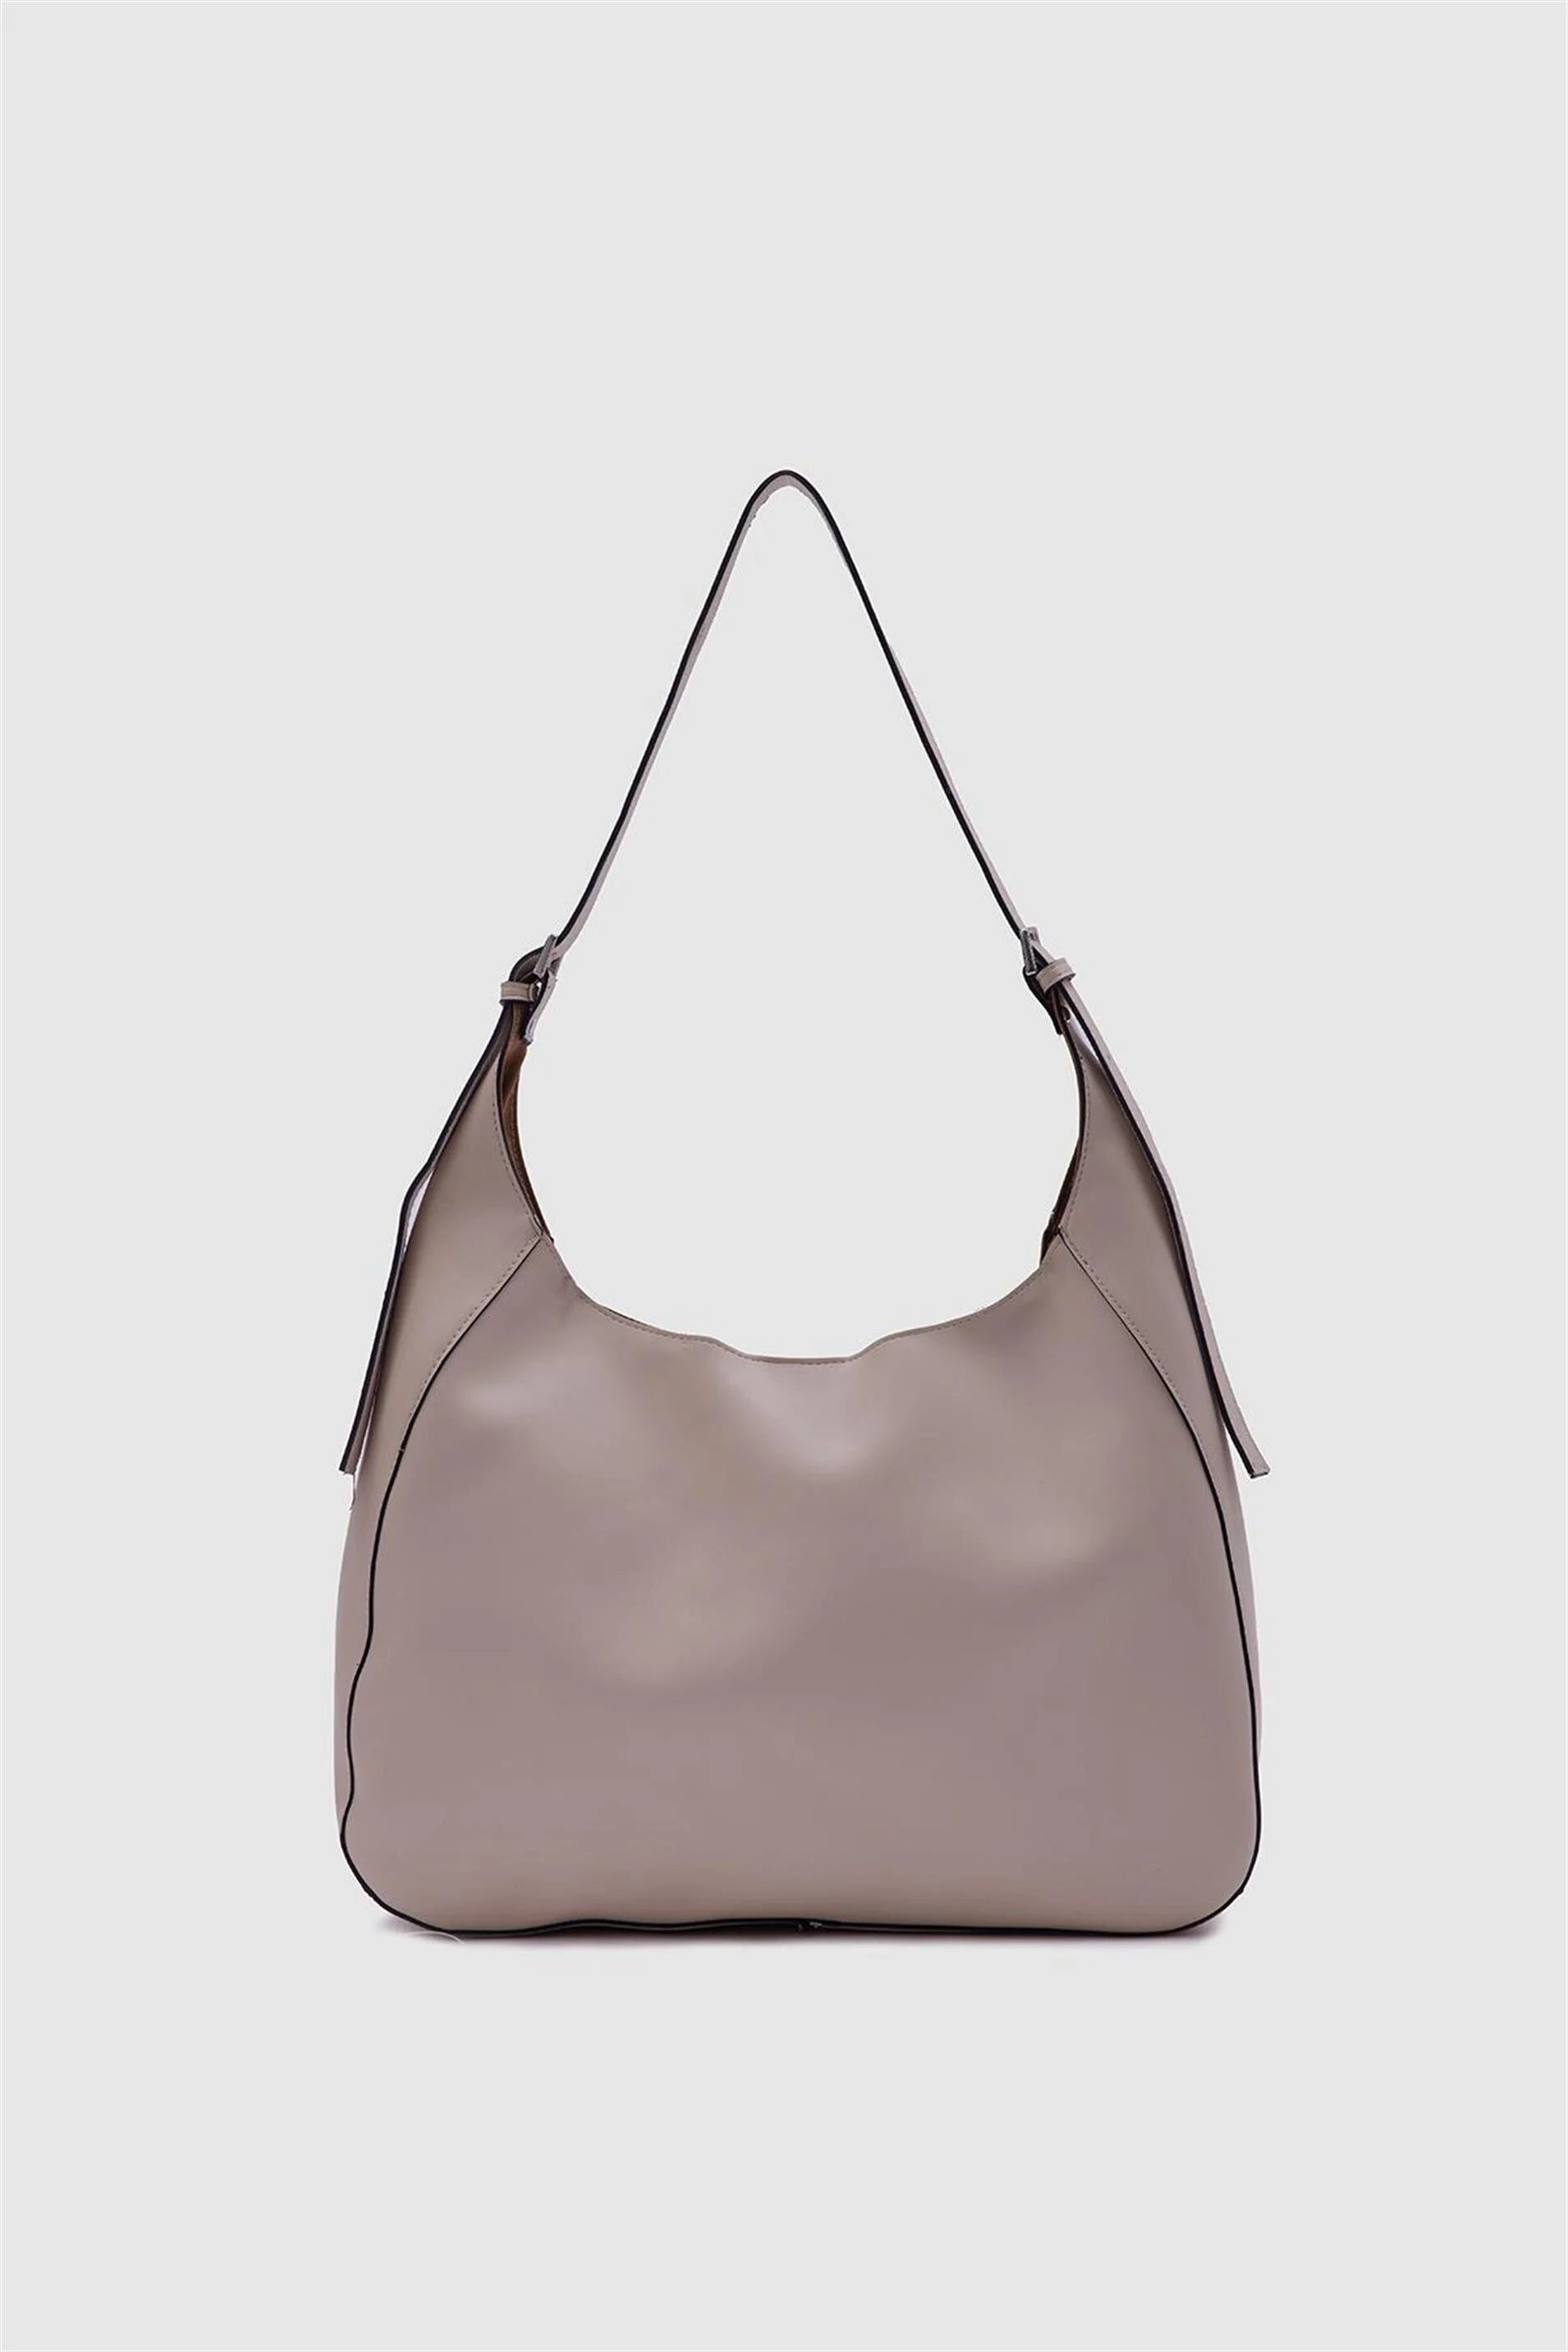 Faux Leather Mink Bigger Shoulder Bag shoulder bag LUNARITY GARAGE Creme  